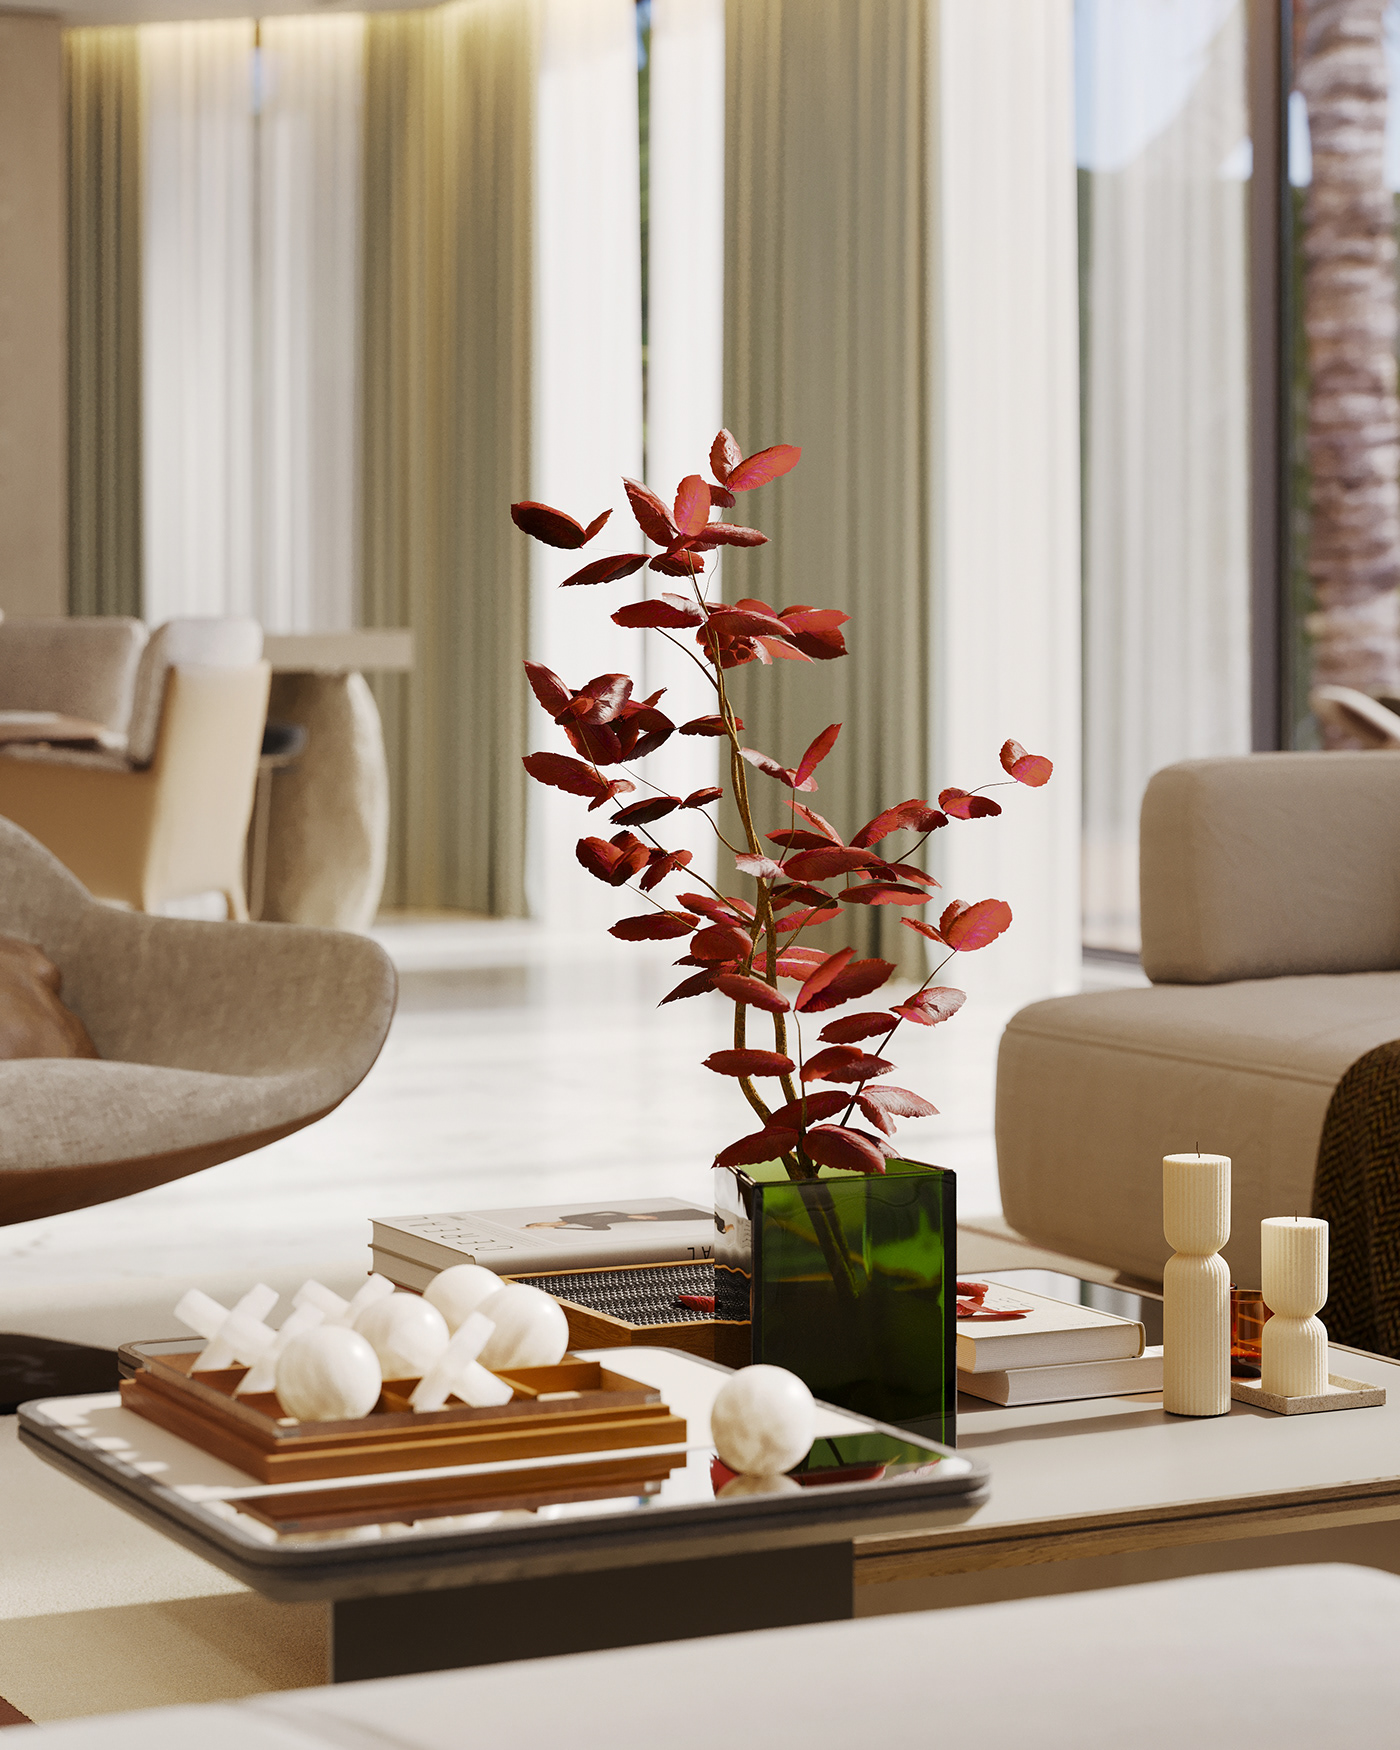 dubai Villa interior design  living room kitchen visualization Render dining Interior garden